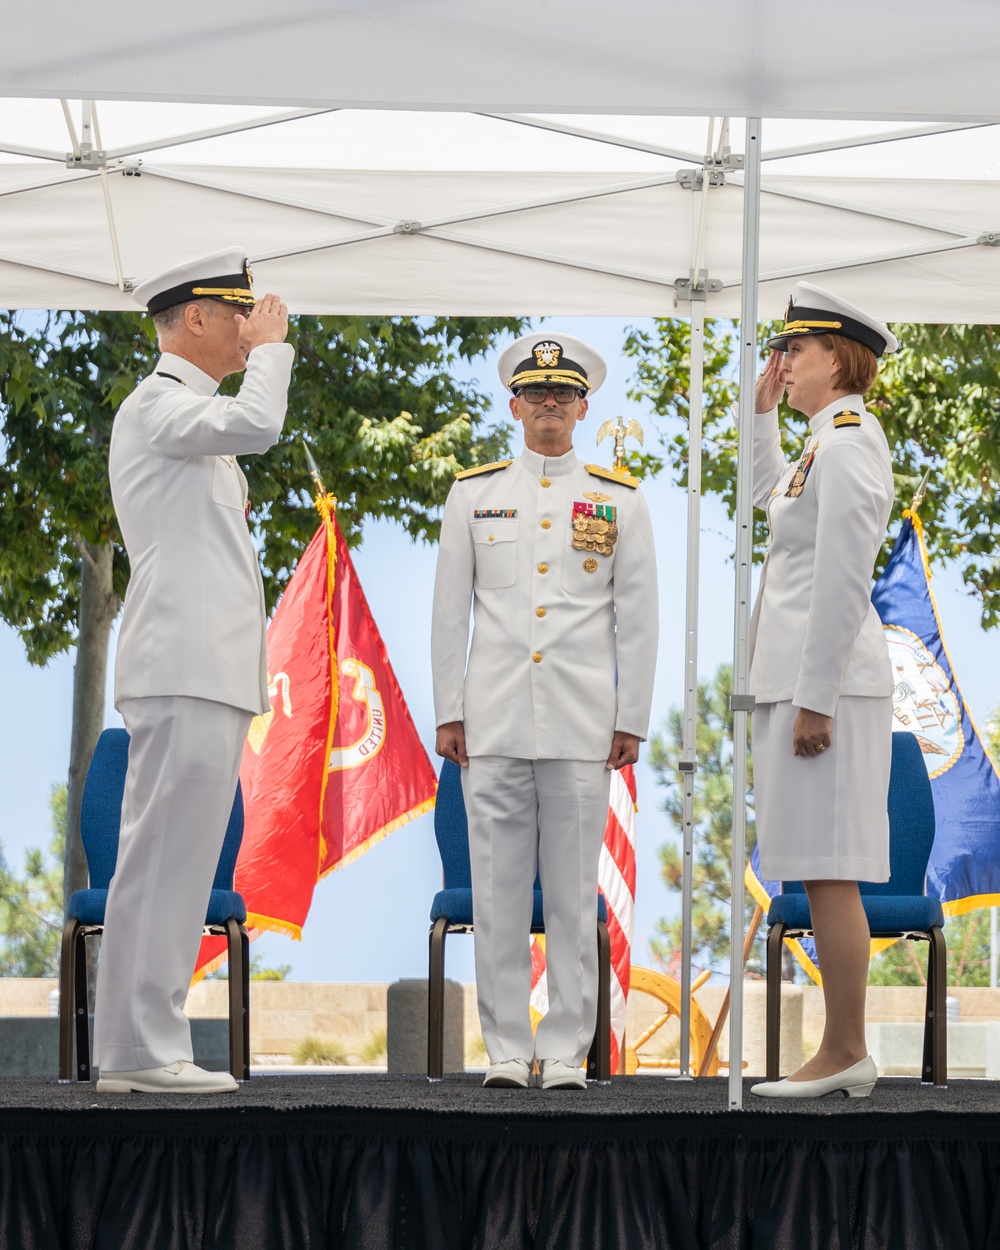 NMRTC Camp Pendleton Change of Command Ceremony